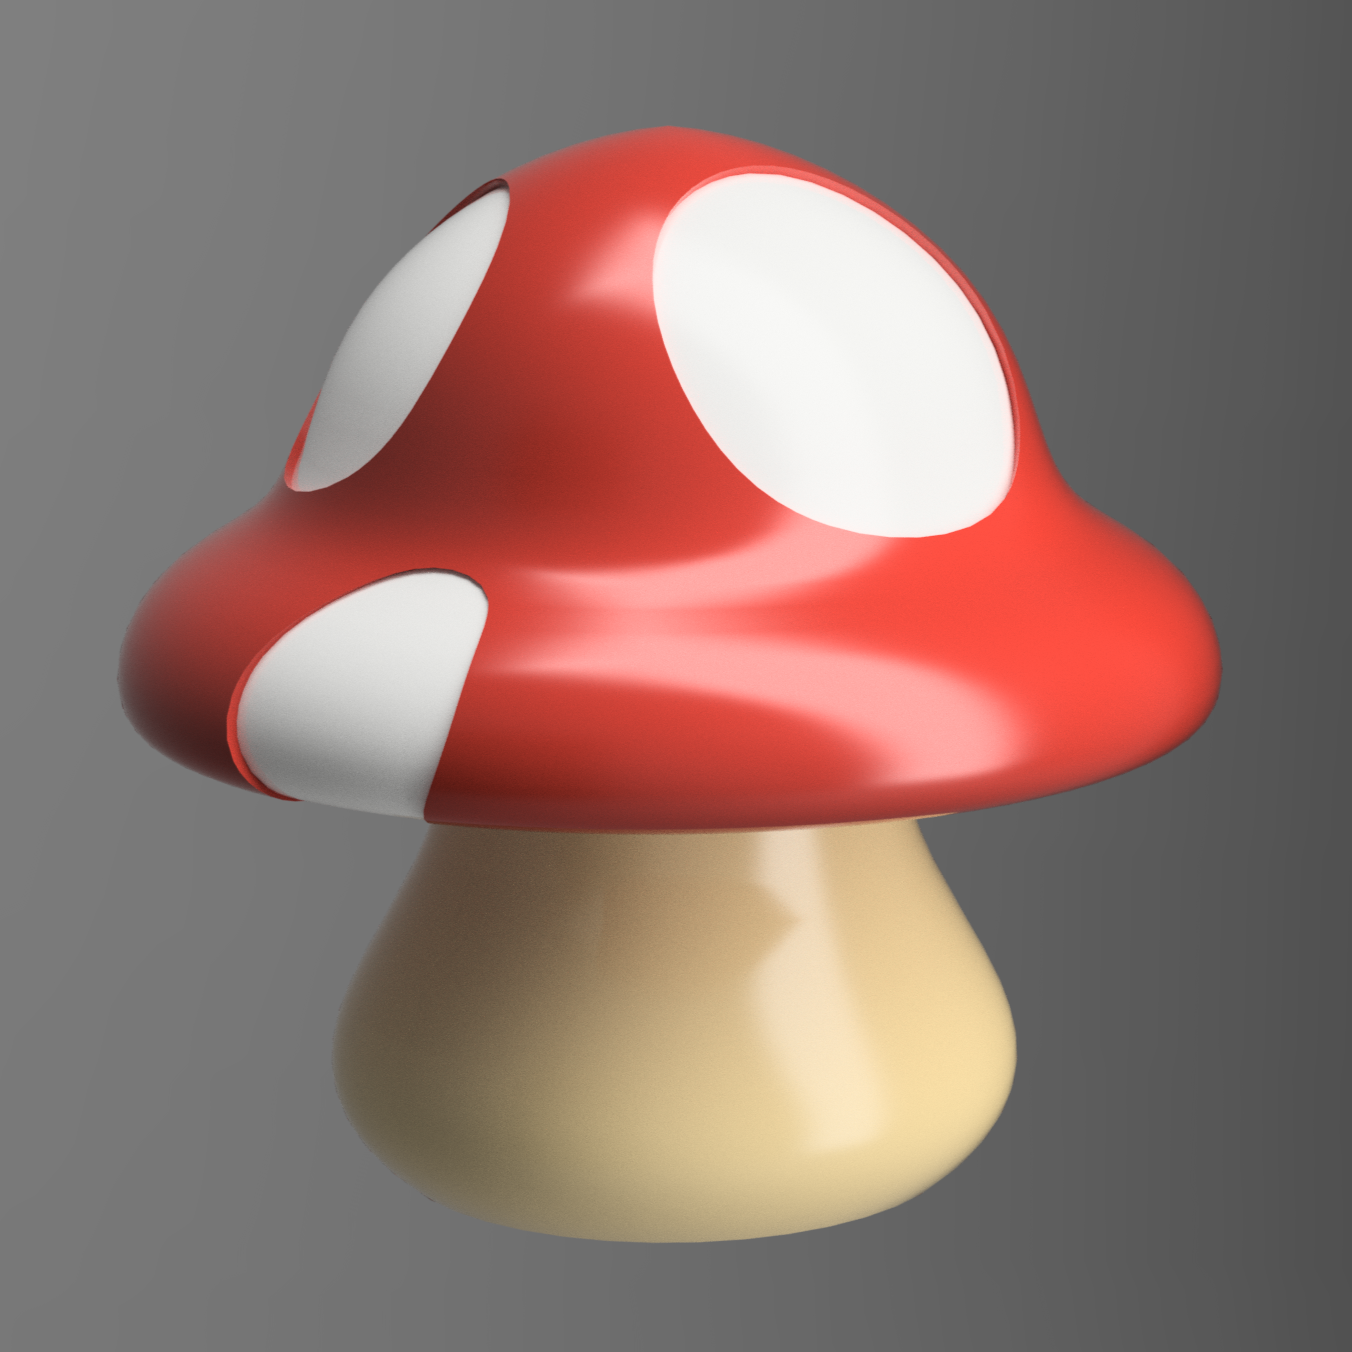 Free - Mushroom (STL File)